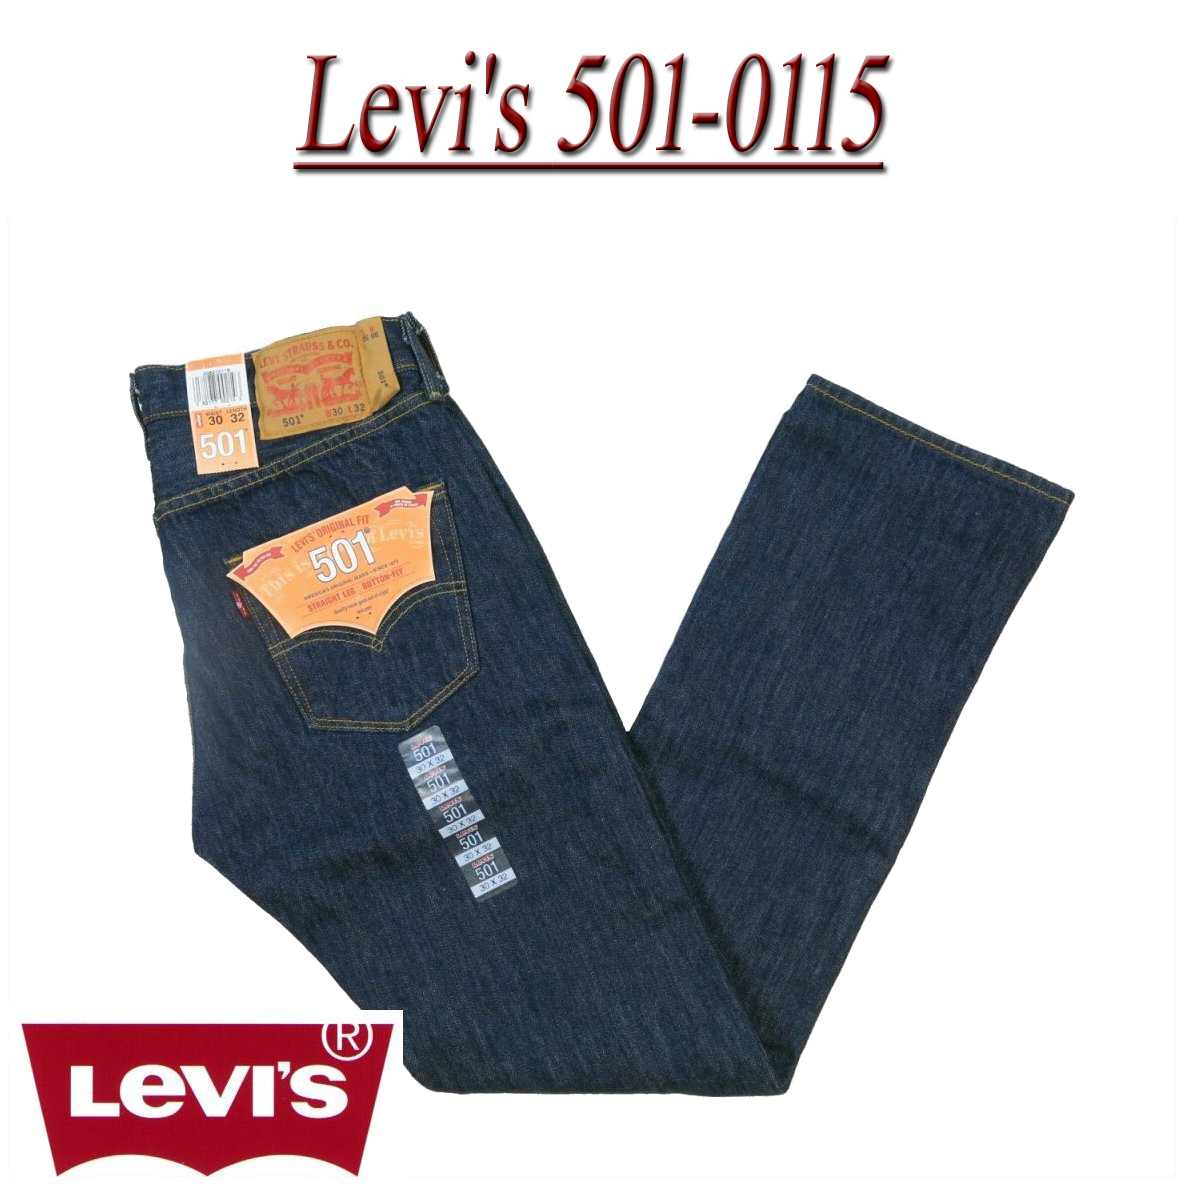 levis 501 us